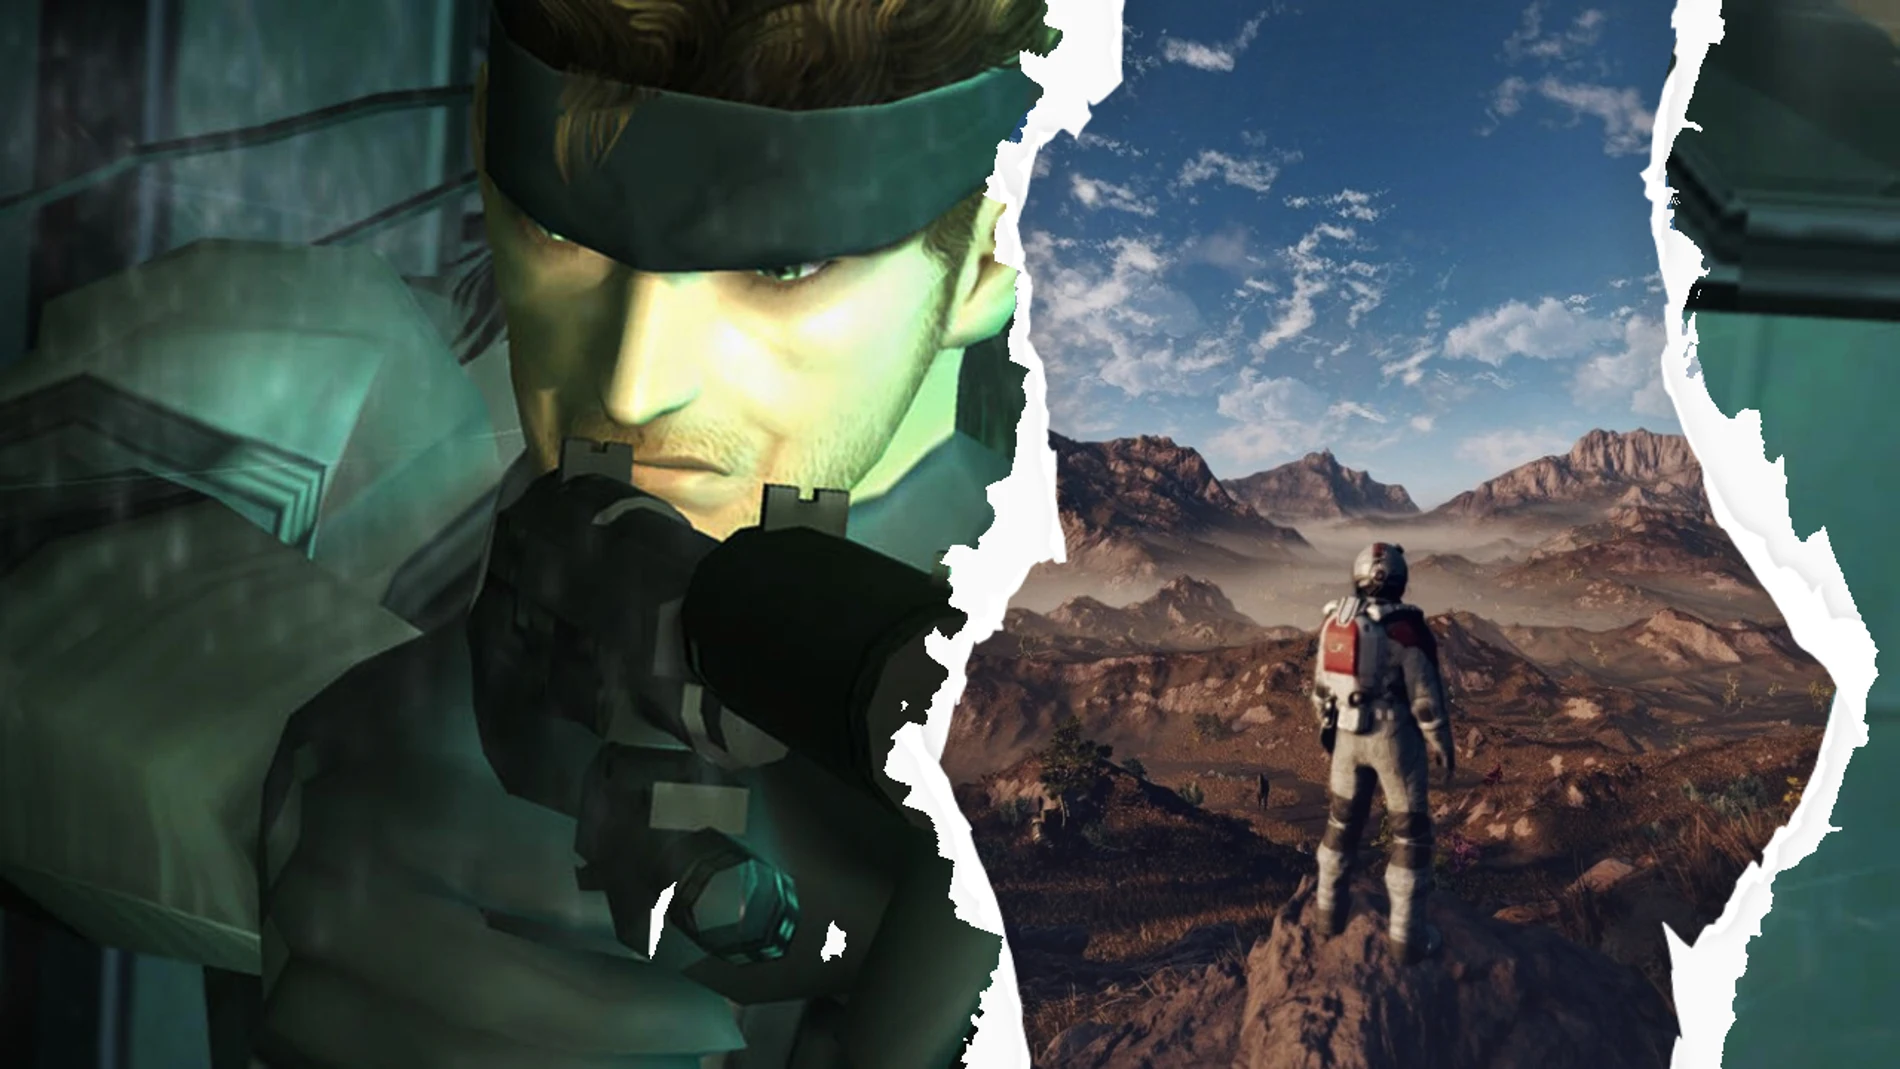 La próxima Capilla Sixtina será un videojuego / "Metal Gear Solid 2" elevó los estándares del videojuego hace dos décadas, "Starfield" promete volverlo a hacer a finales de año